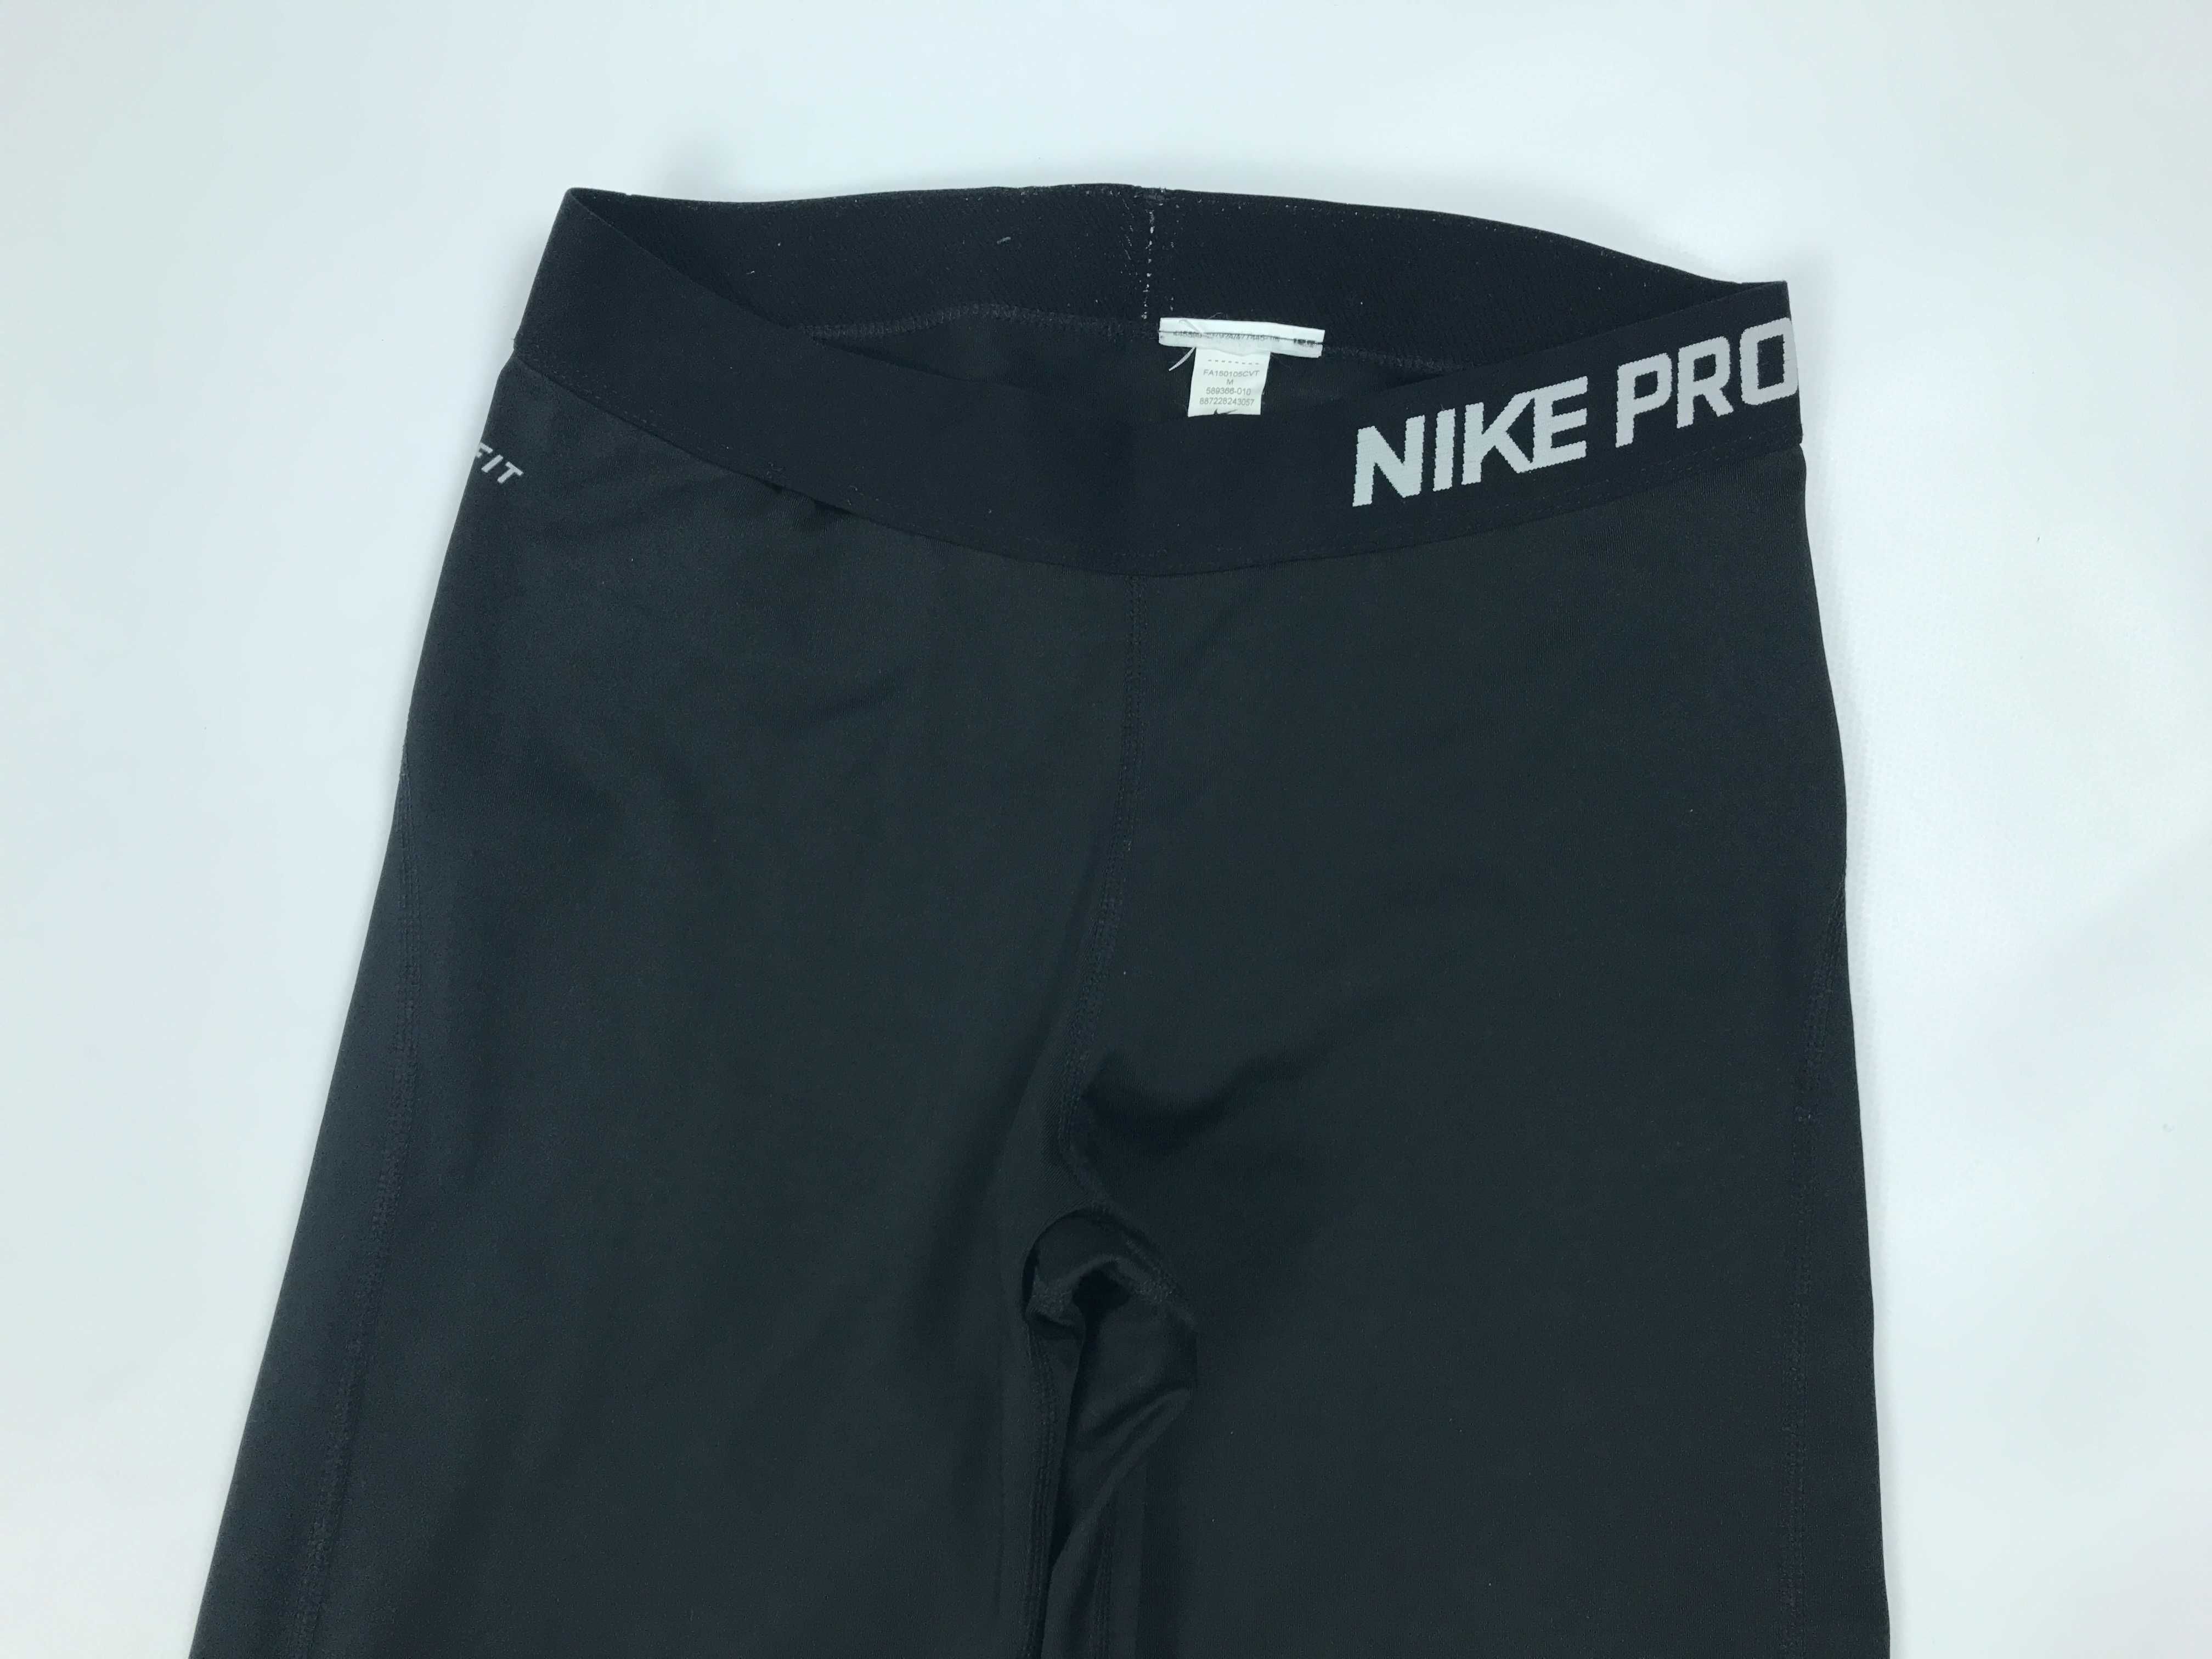 Nike Pro Core Dri Fit Женские 3/4 Компрессионные Леггинсы Лосины